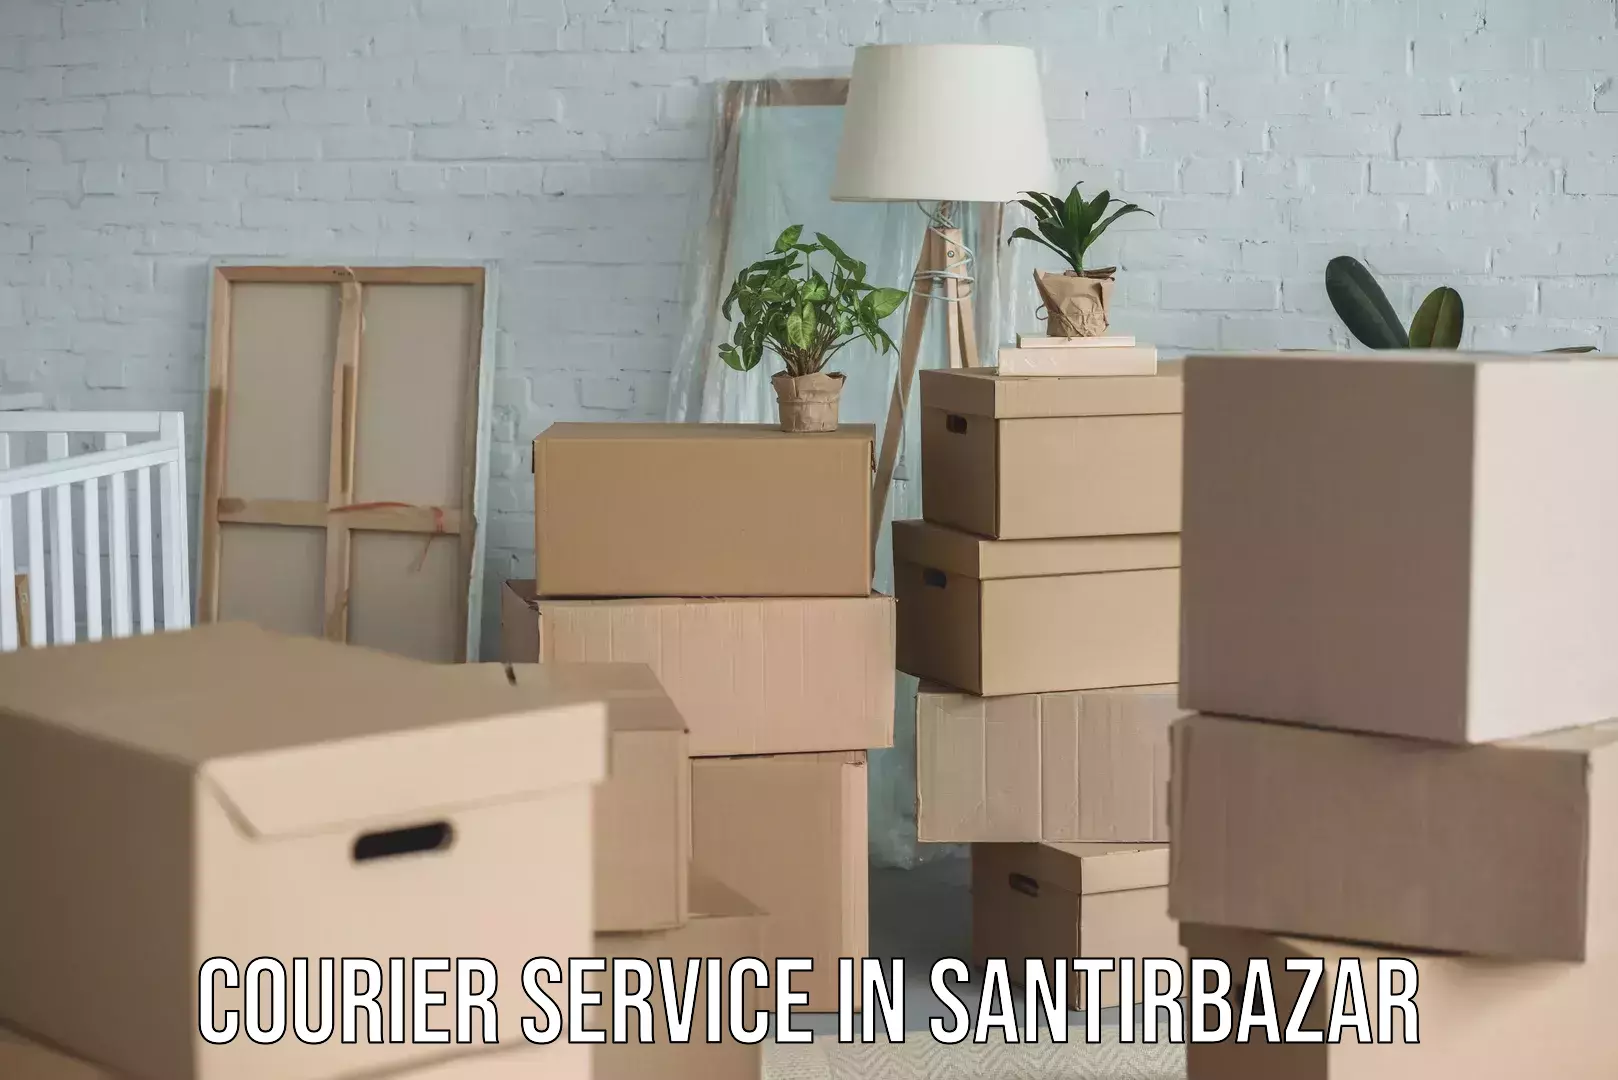 Diverse delivery methods in Santirbazar